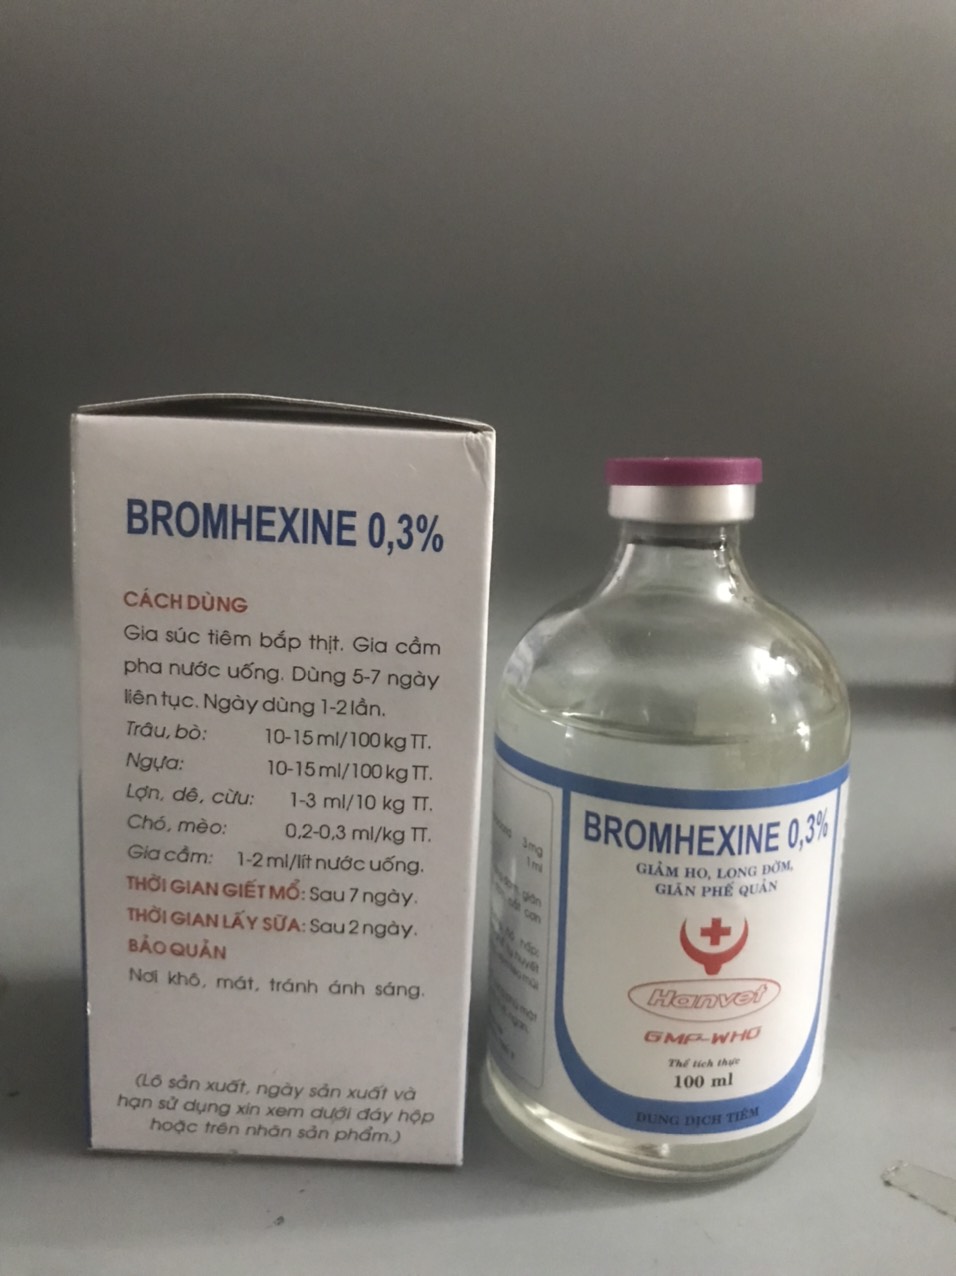 Thuốc thú y, Bromhexine 0,3% Brom 100ml - Hanvet dùng cho chó, mèo, gia súc, gia cầm